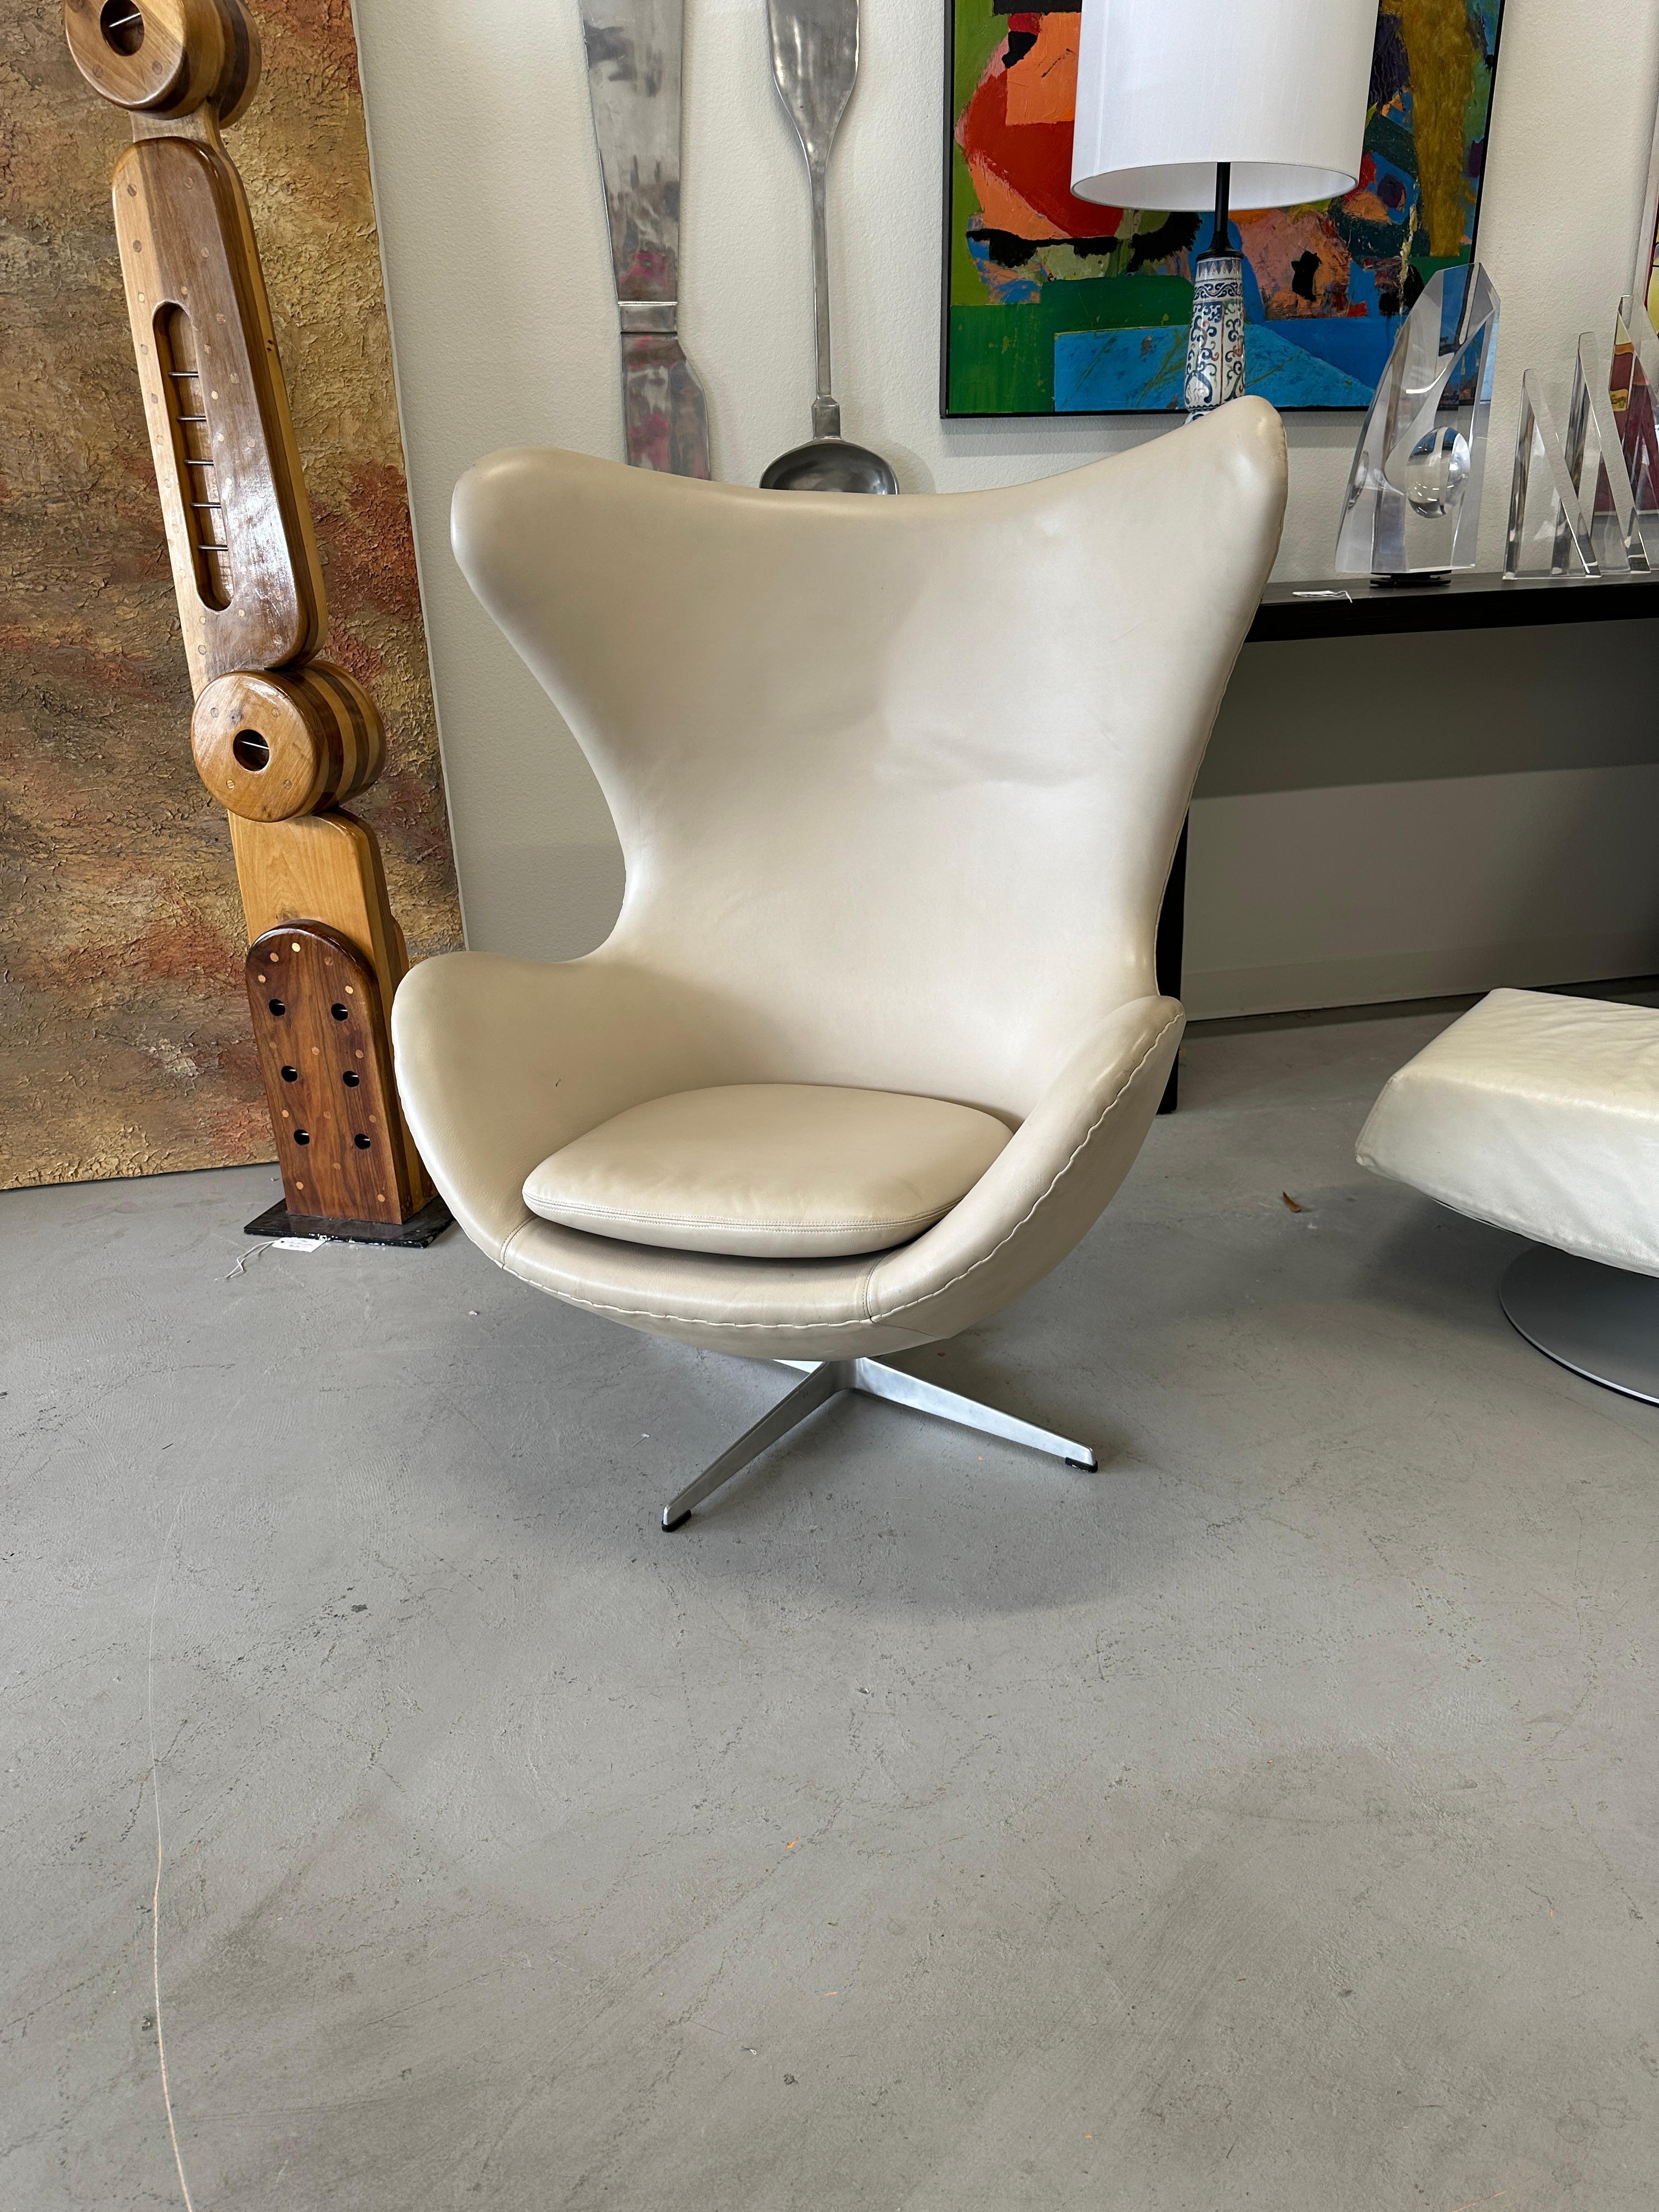 Magnifique fauteuil en cuir beige de Arne Jacobsen pour Fritz Hansen. Il porte le code de date 0466 indiquant une date de production de 1966. 
Le montant et le bas de la chaise sont munis d'étiquettes en aluminium.  
Dans l'ensemble en bon état pour